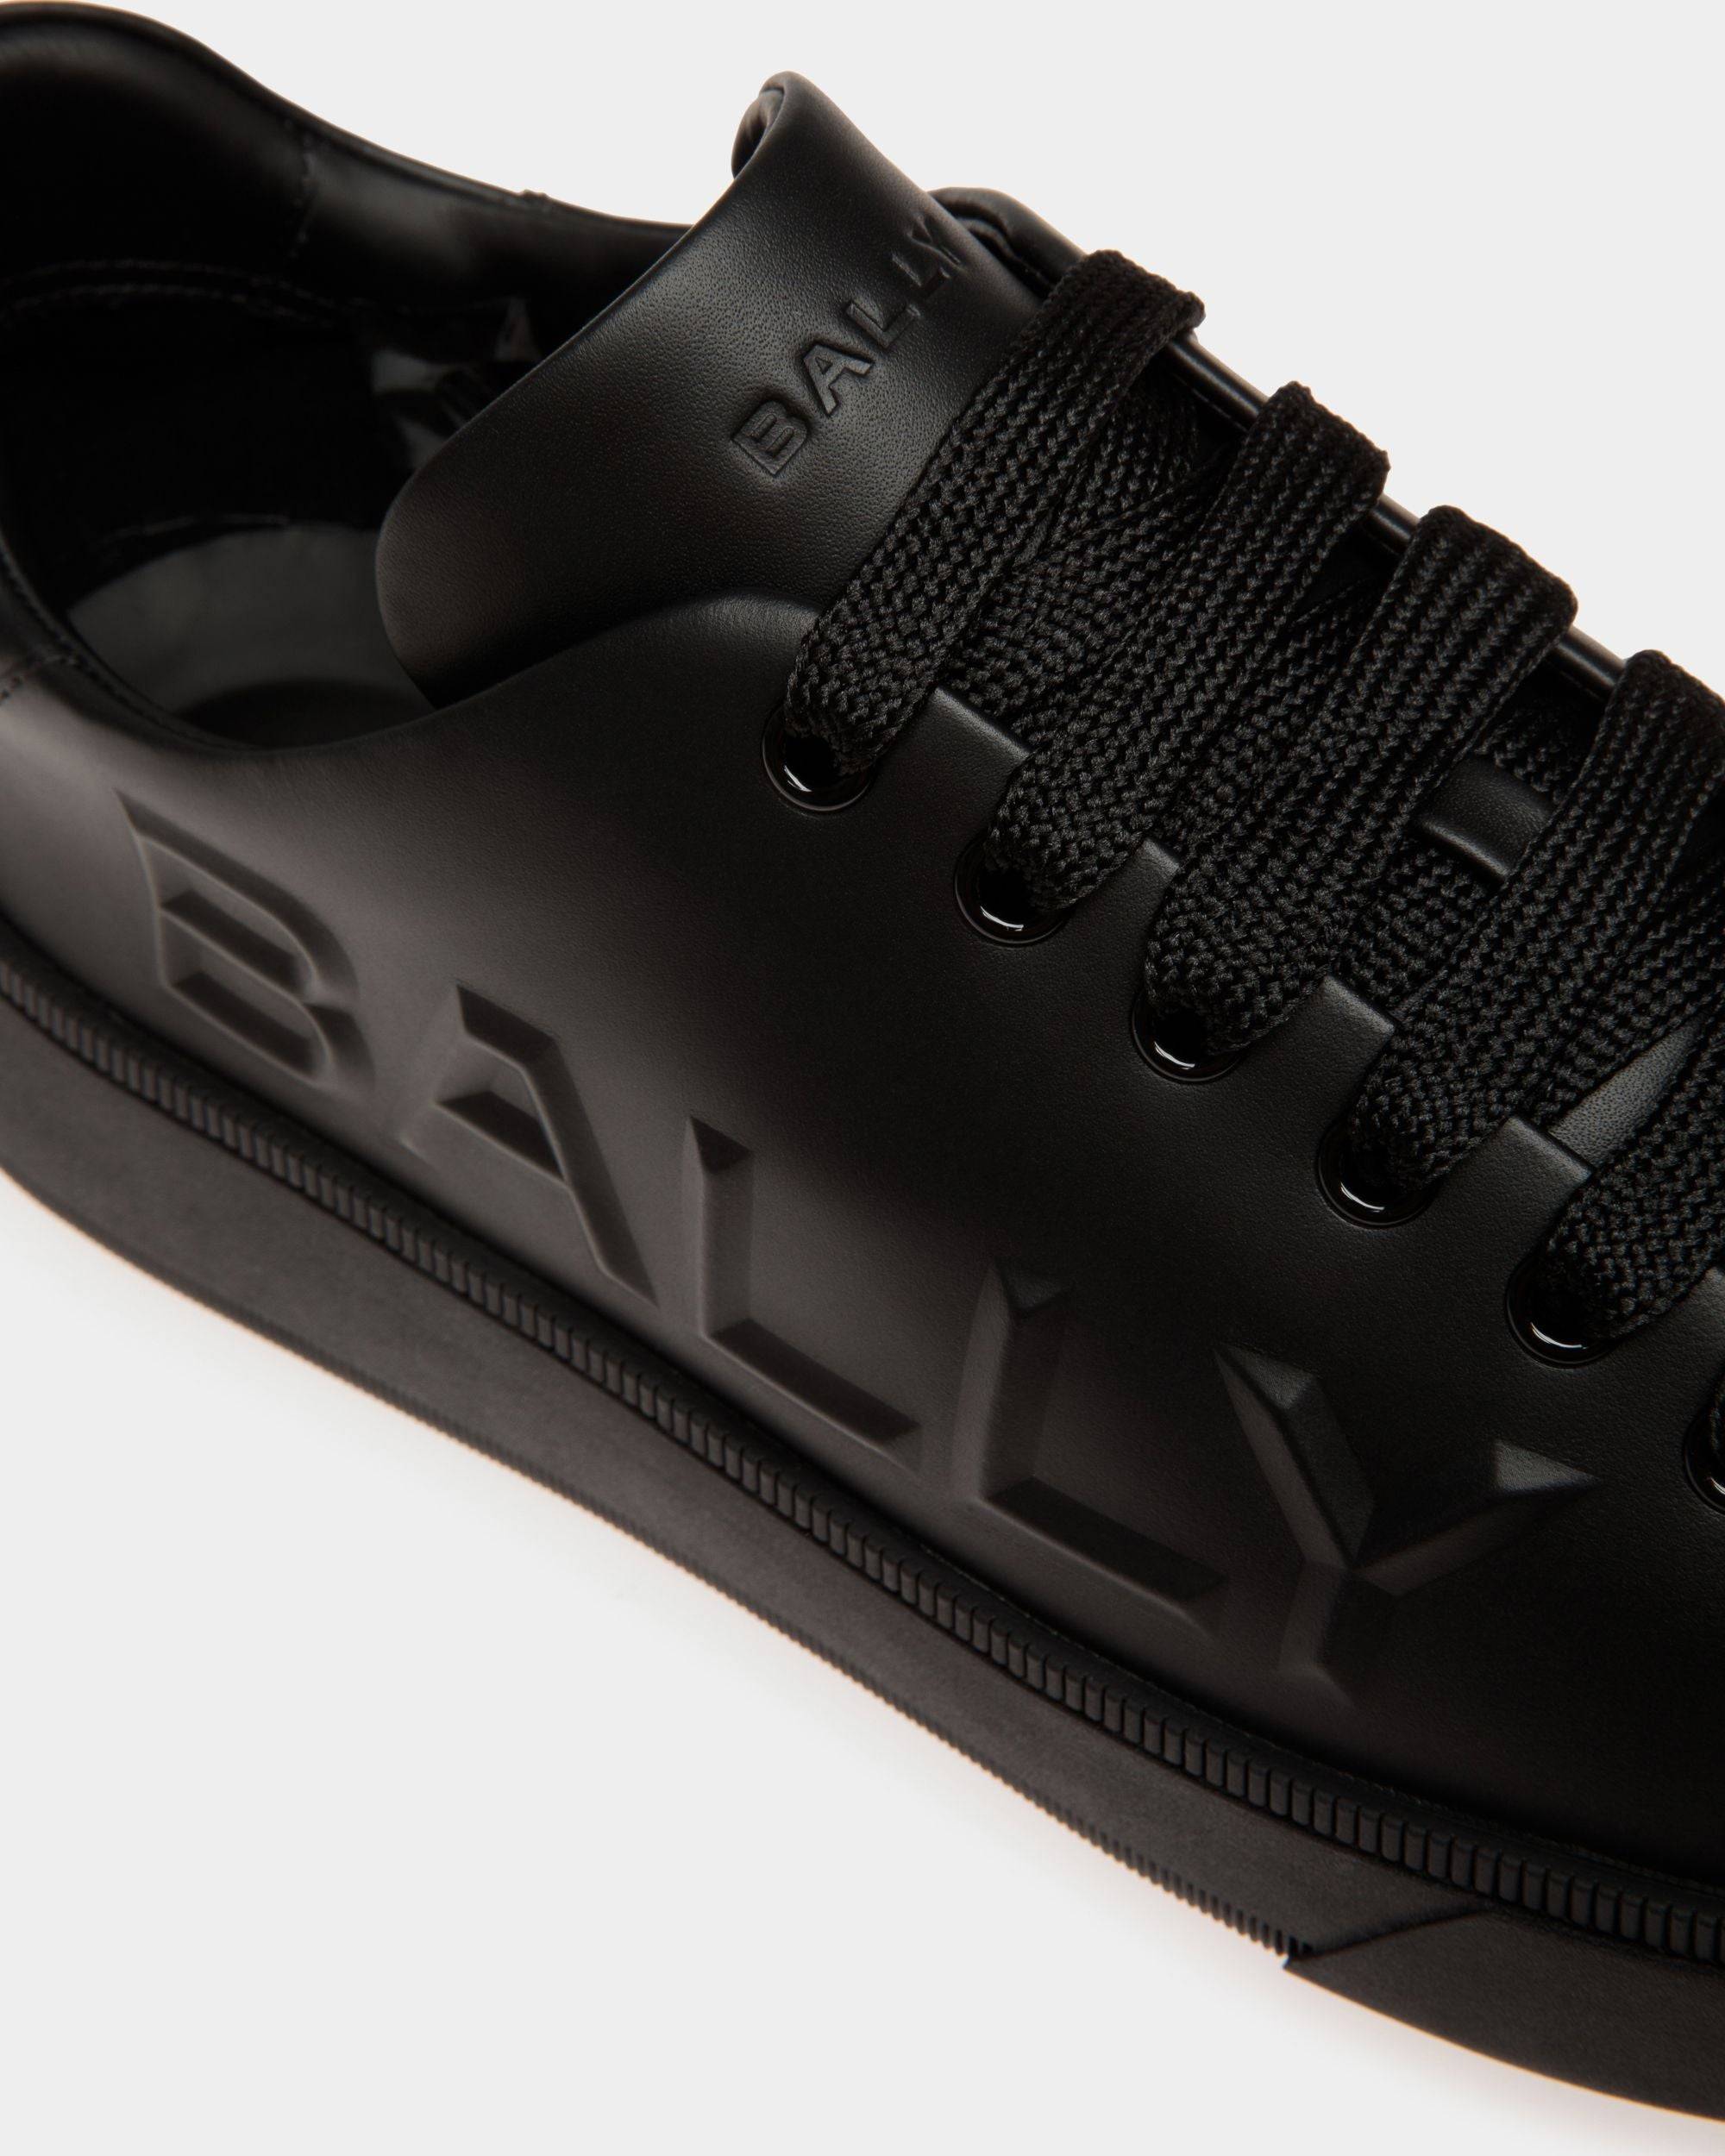 Raise | Herren-Sneaker aus schwarzem Leder | Bally | Still Life Detail